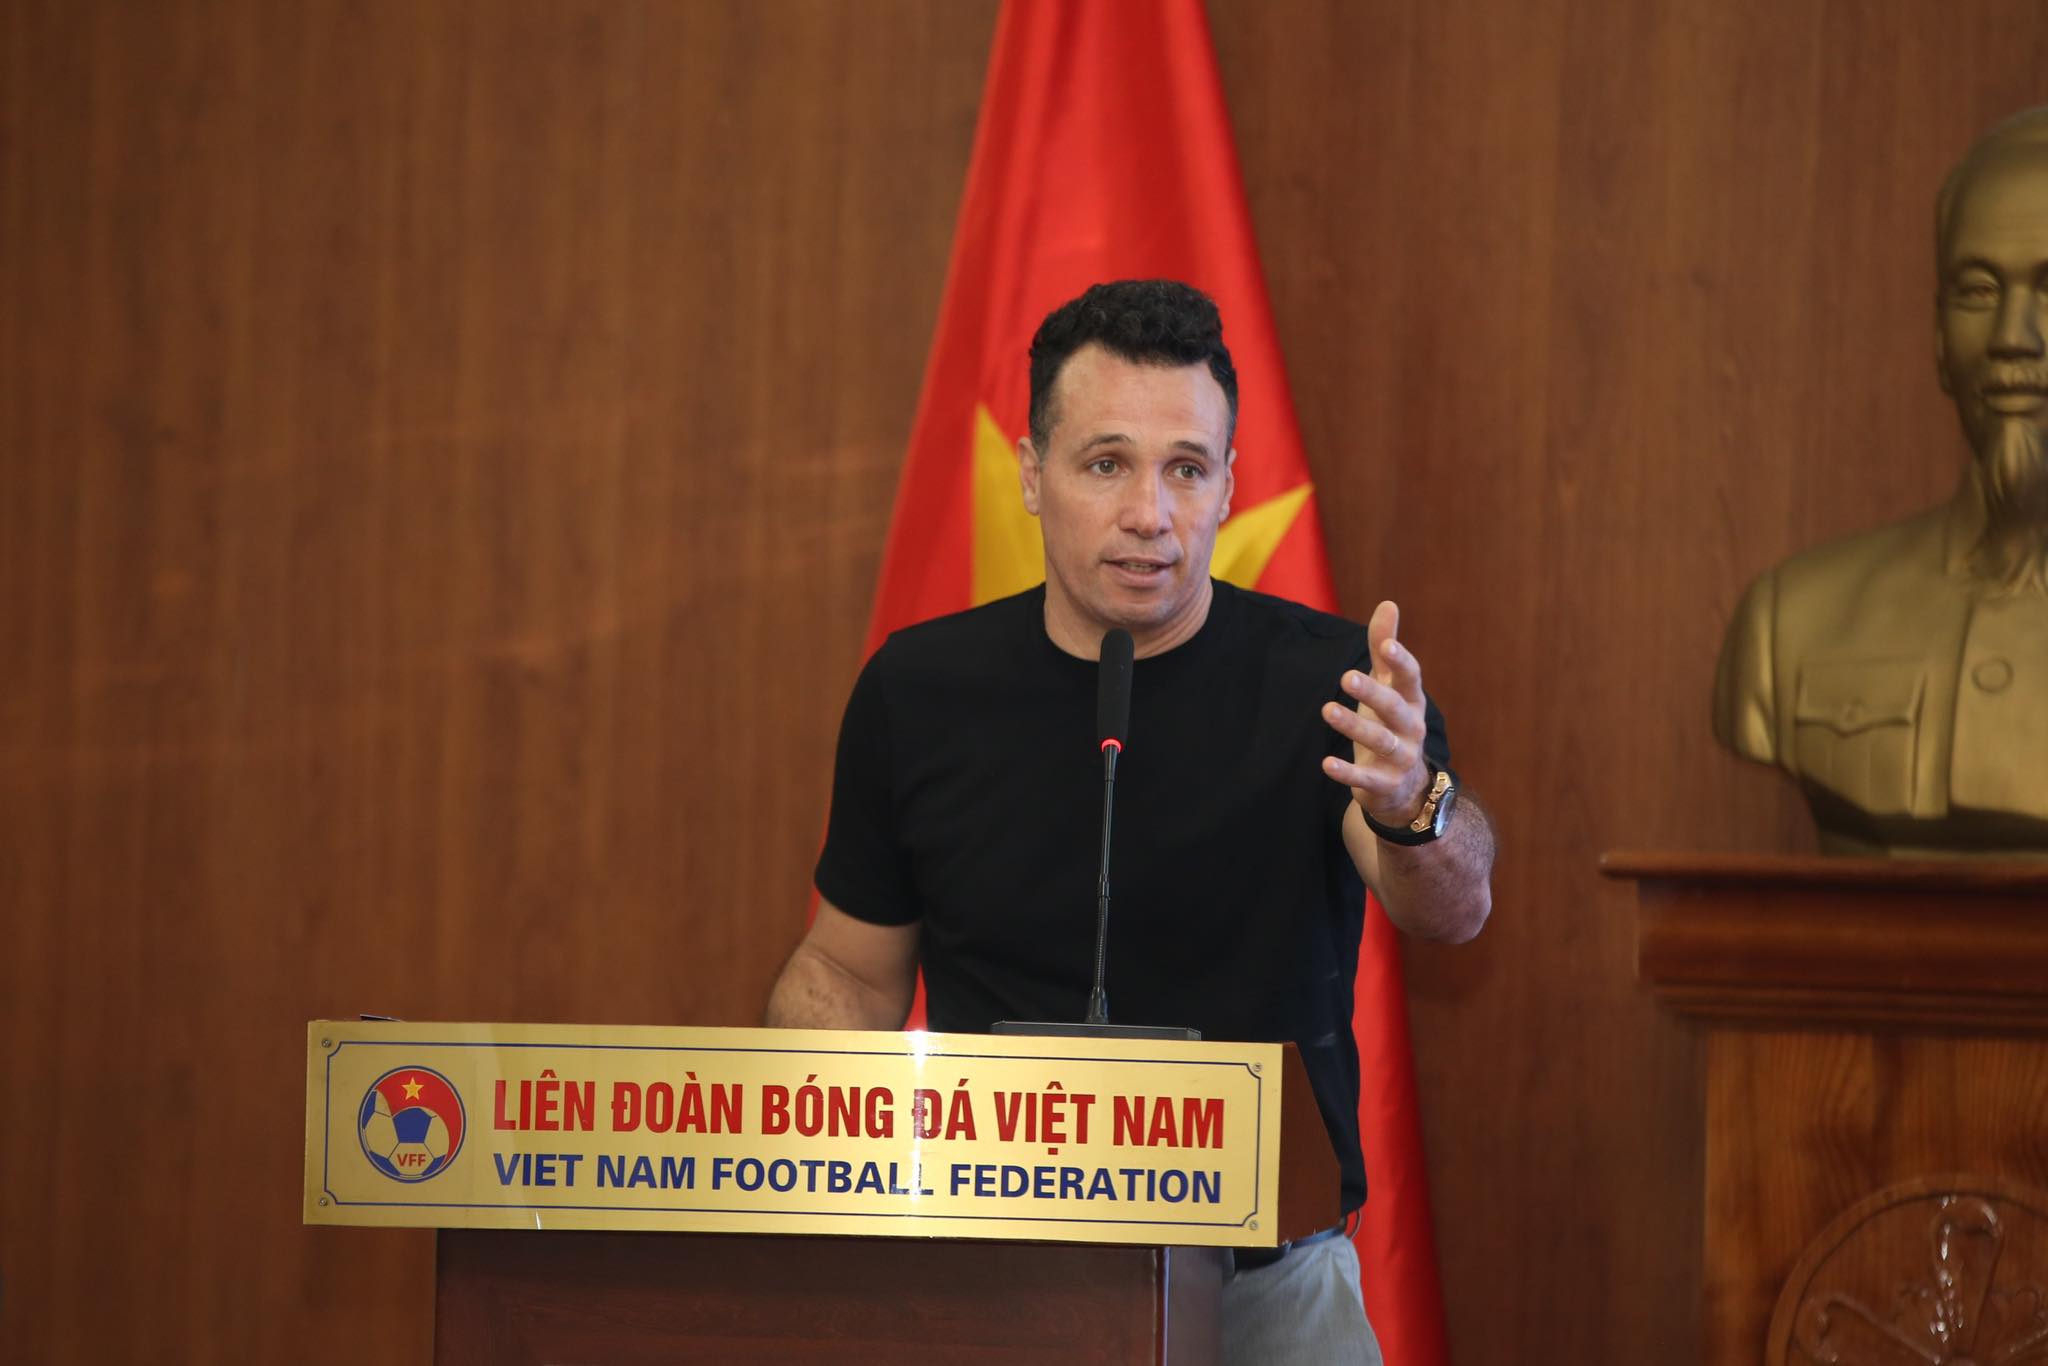 HLV Gustozzi hạ quyết tâm sẽ giúp ĐT futsal Việt Nam lột xác trong thời gian tới - Ảnh: Đức Cường 